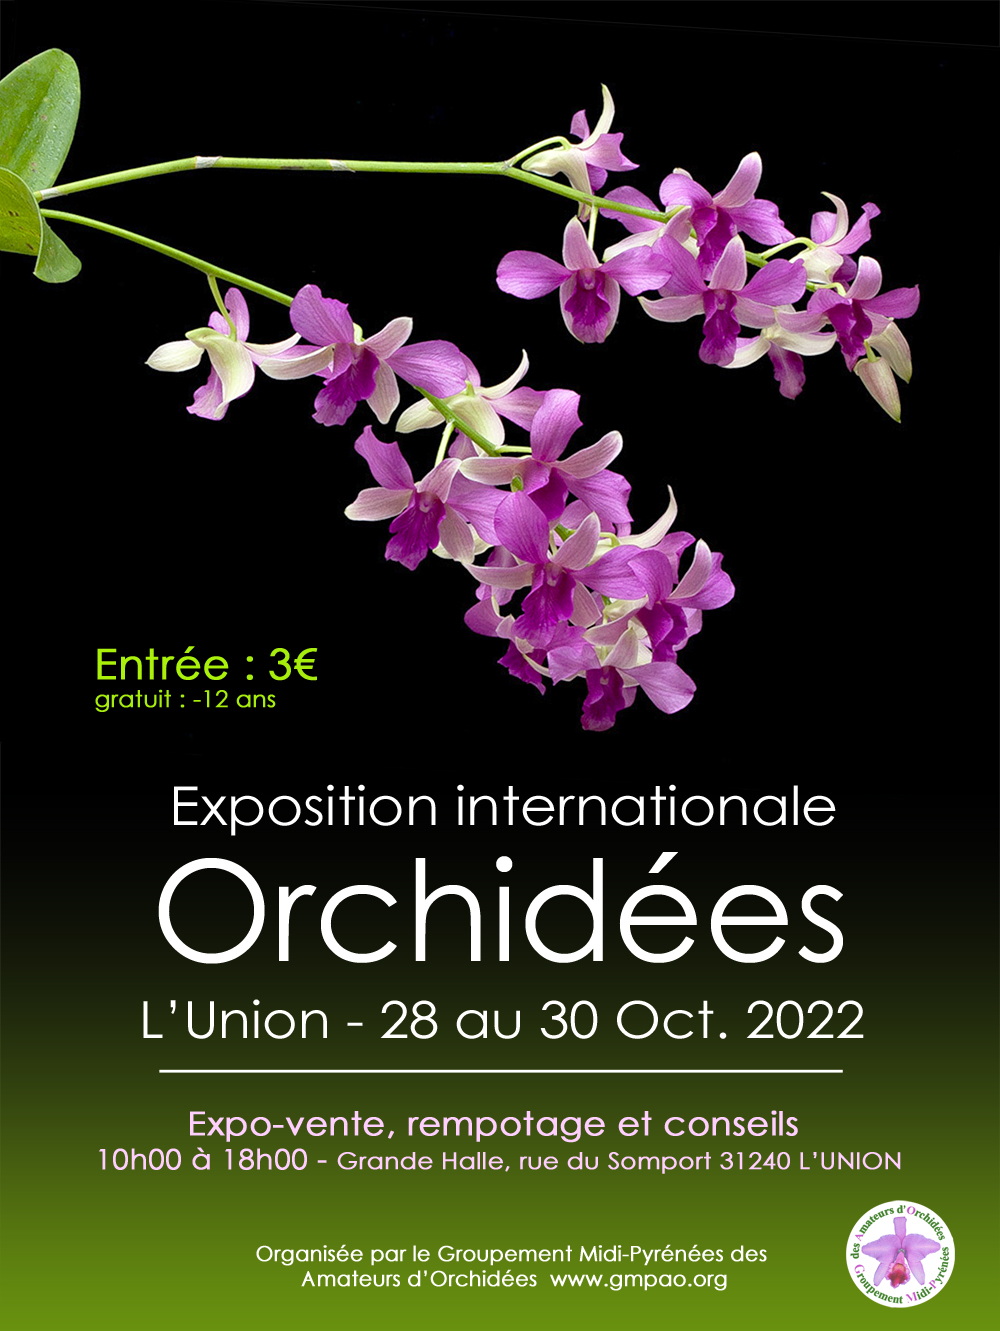 Exposition Internationale d'Orchidées 2022 de l'Union